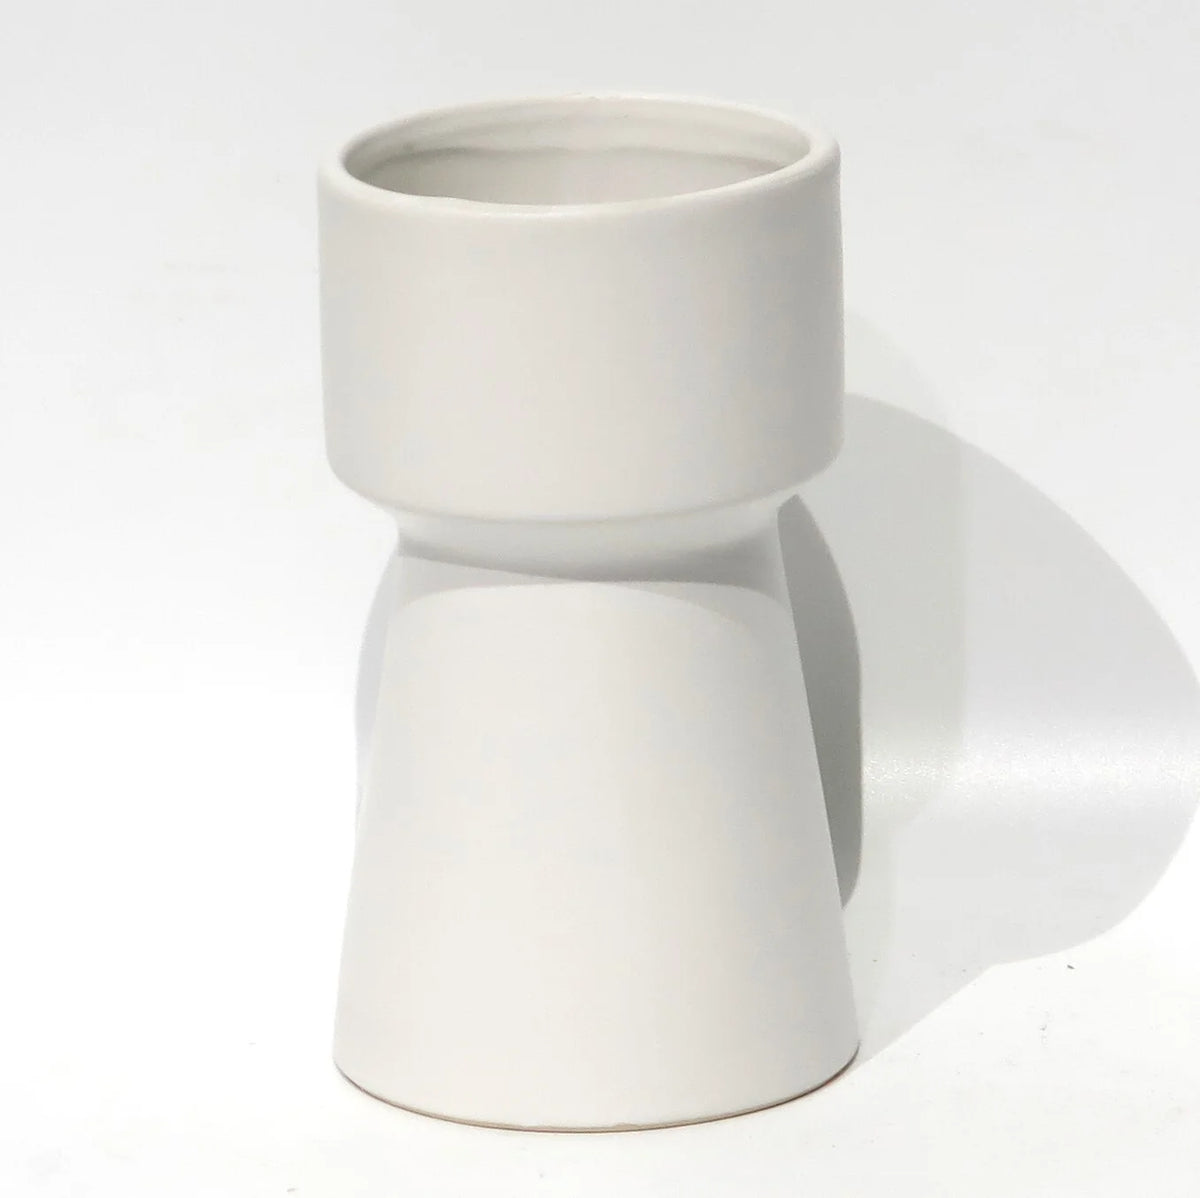 Pot en hauteur blanc - CE94-155  4"DX6.8"H Matte White Ceramic Pot